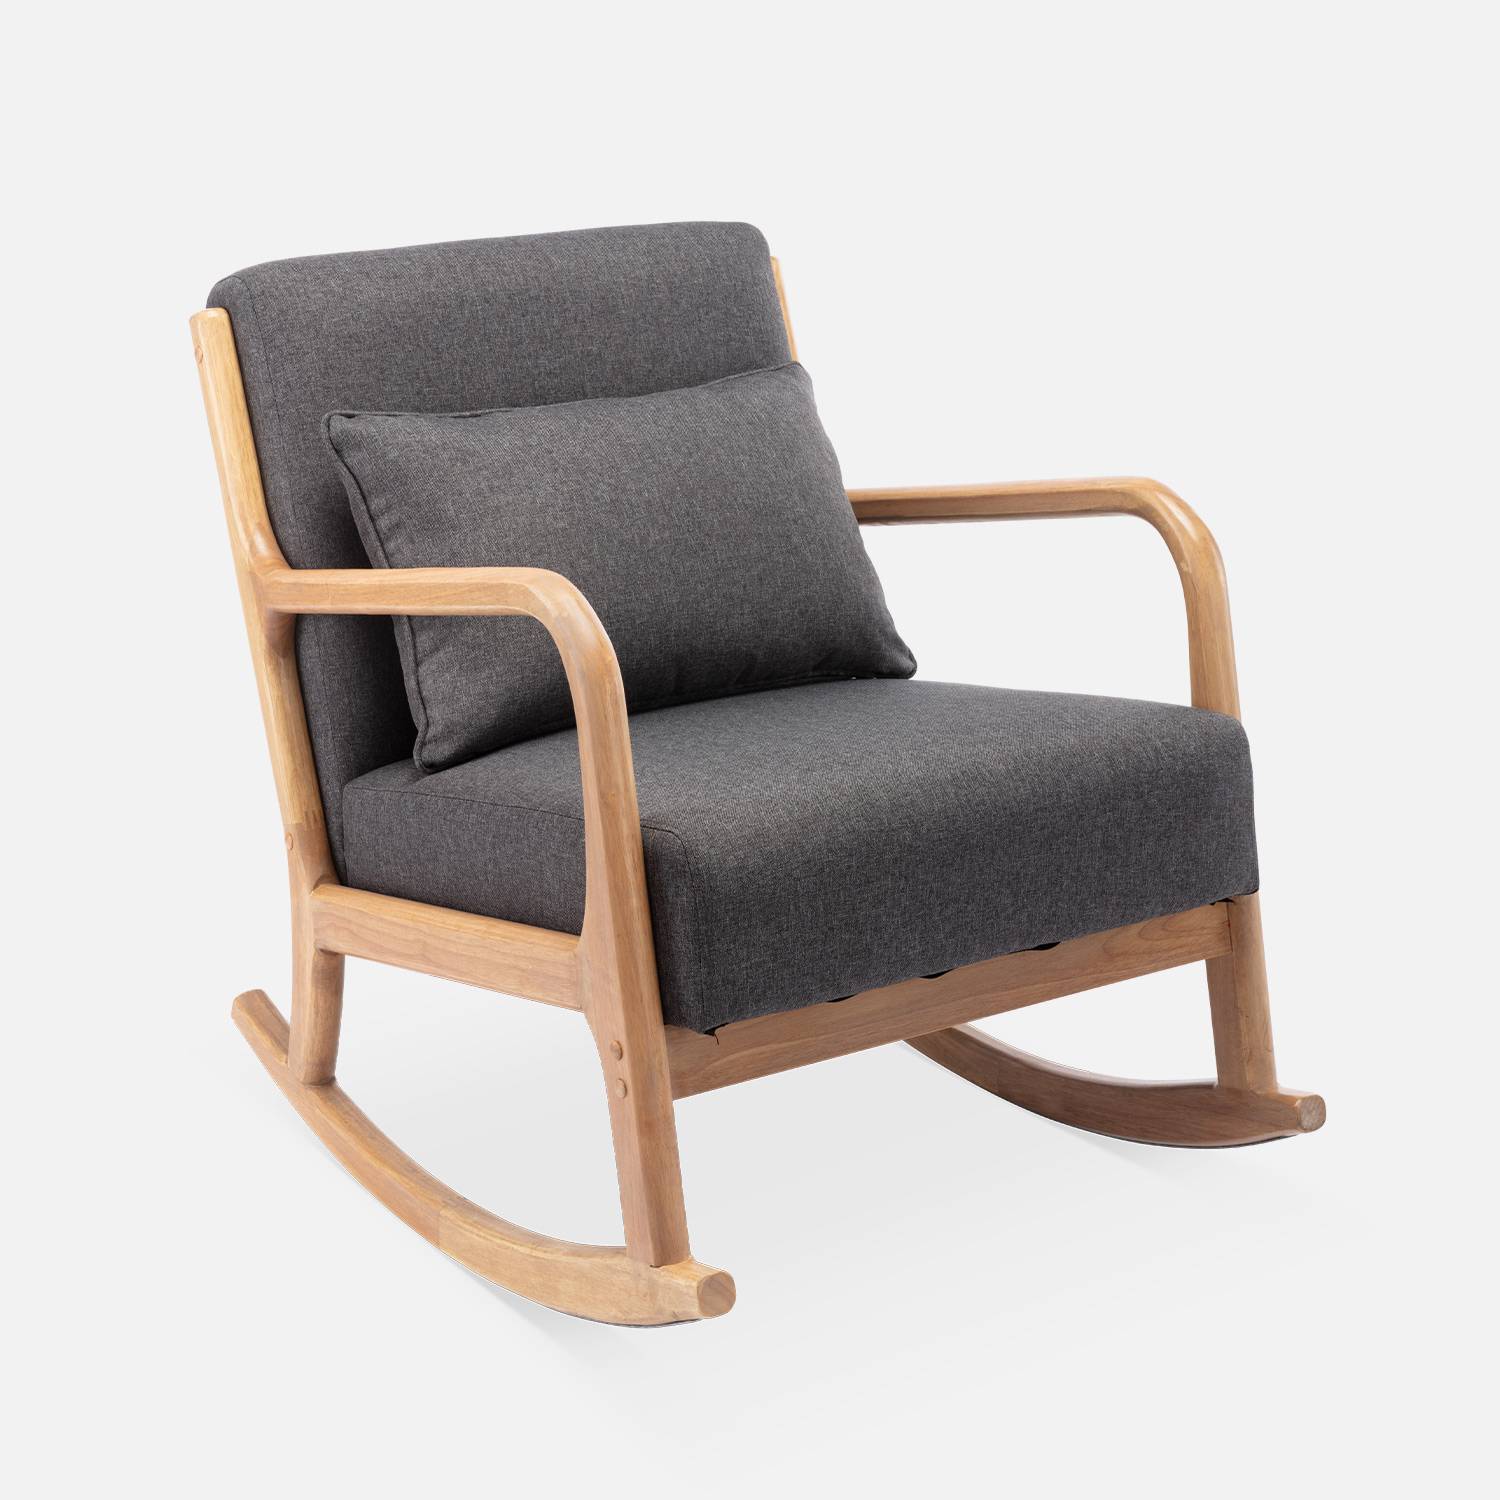 Fauteuil à bascule design en bois et tissu, 1 place, rocking chair scandinave  Photo2